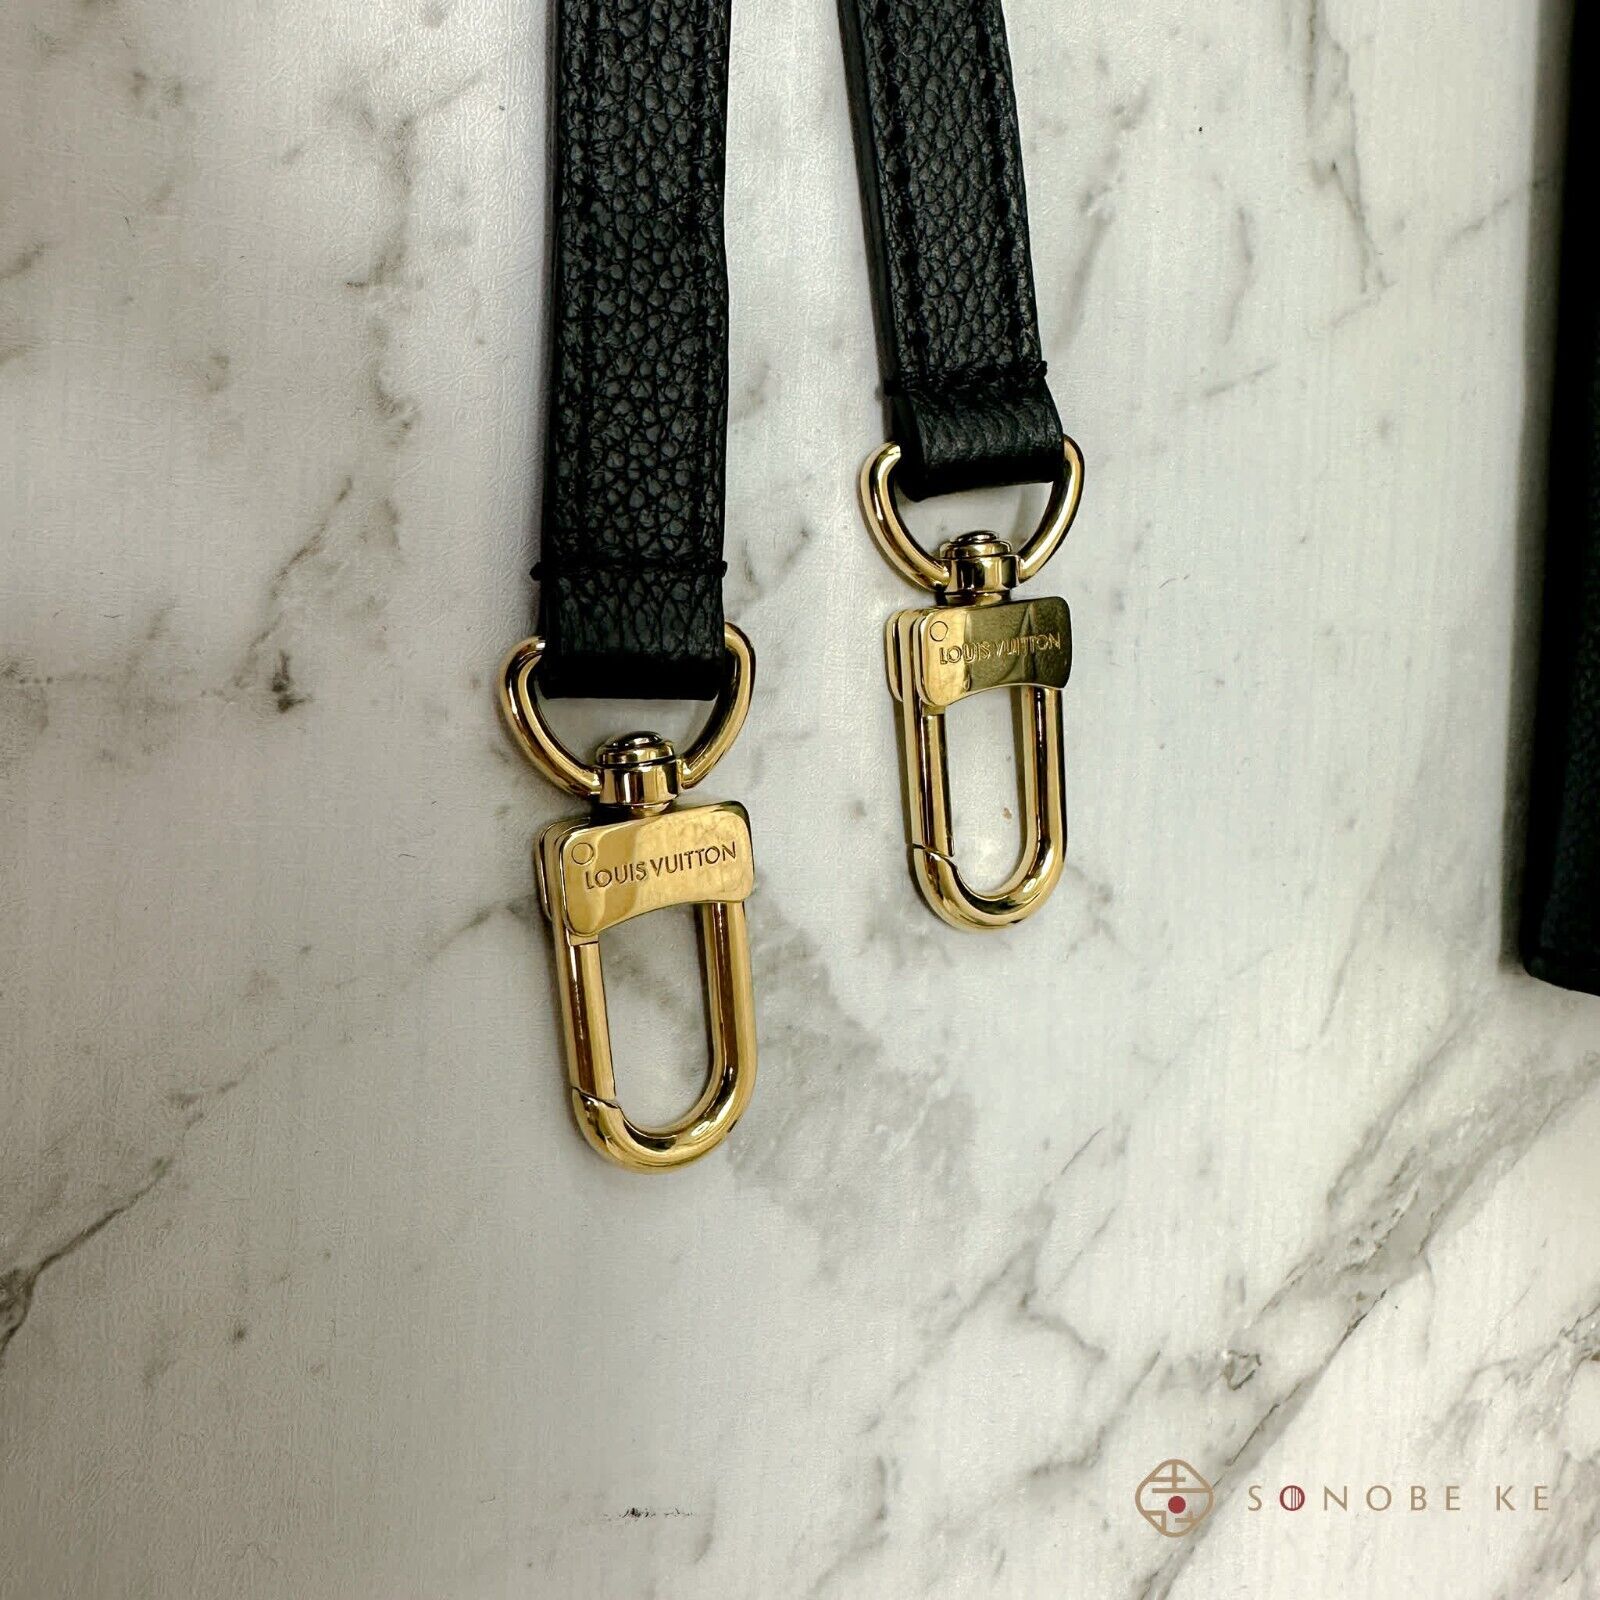 Louis Vuitton Nior belt. 100% authentic.